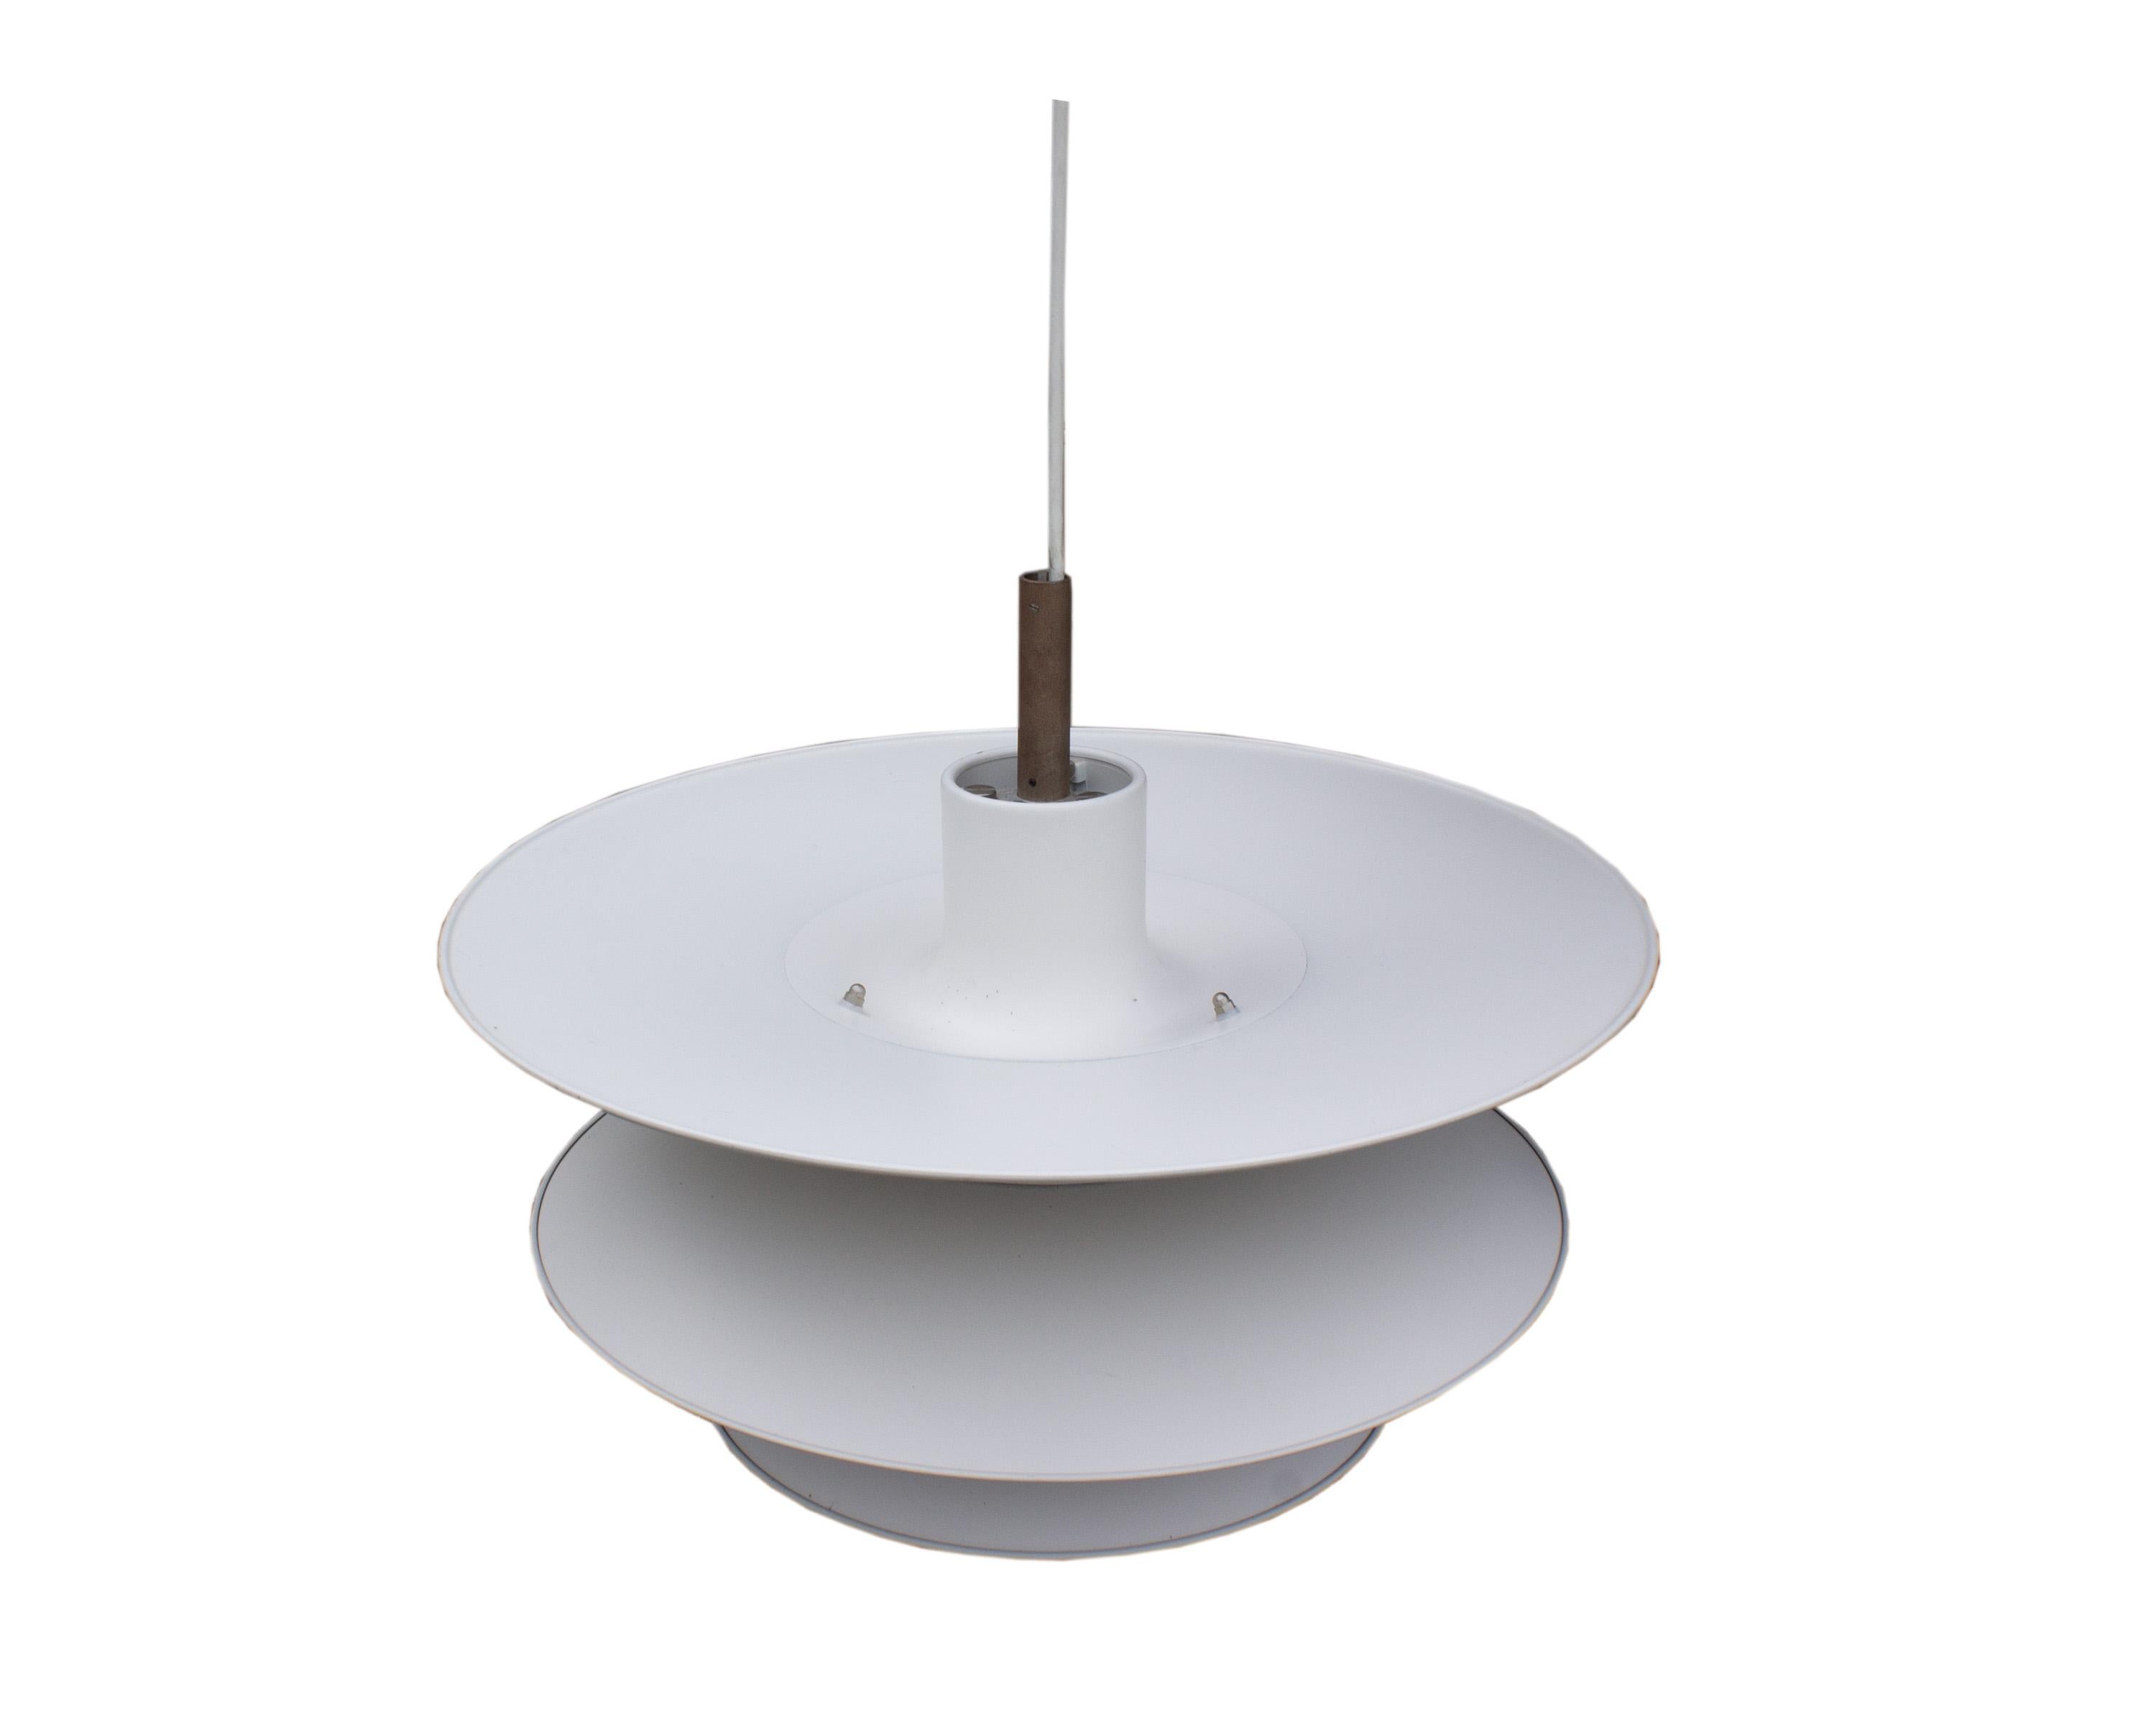 Une lampe suspendue PH6 du designer danois Poul Henningsen (1894-1967) pour Louis Poulsen. Ce luminaire, de couleur blanche, reprend le design emblématique des suspensions Louis Poulsen avec des superpositions distinctes. Les trois couches